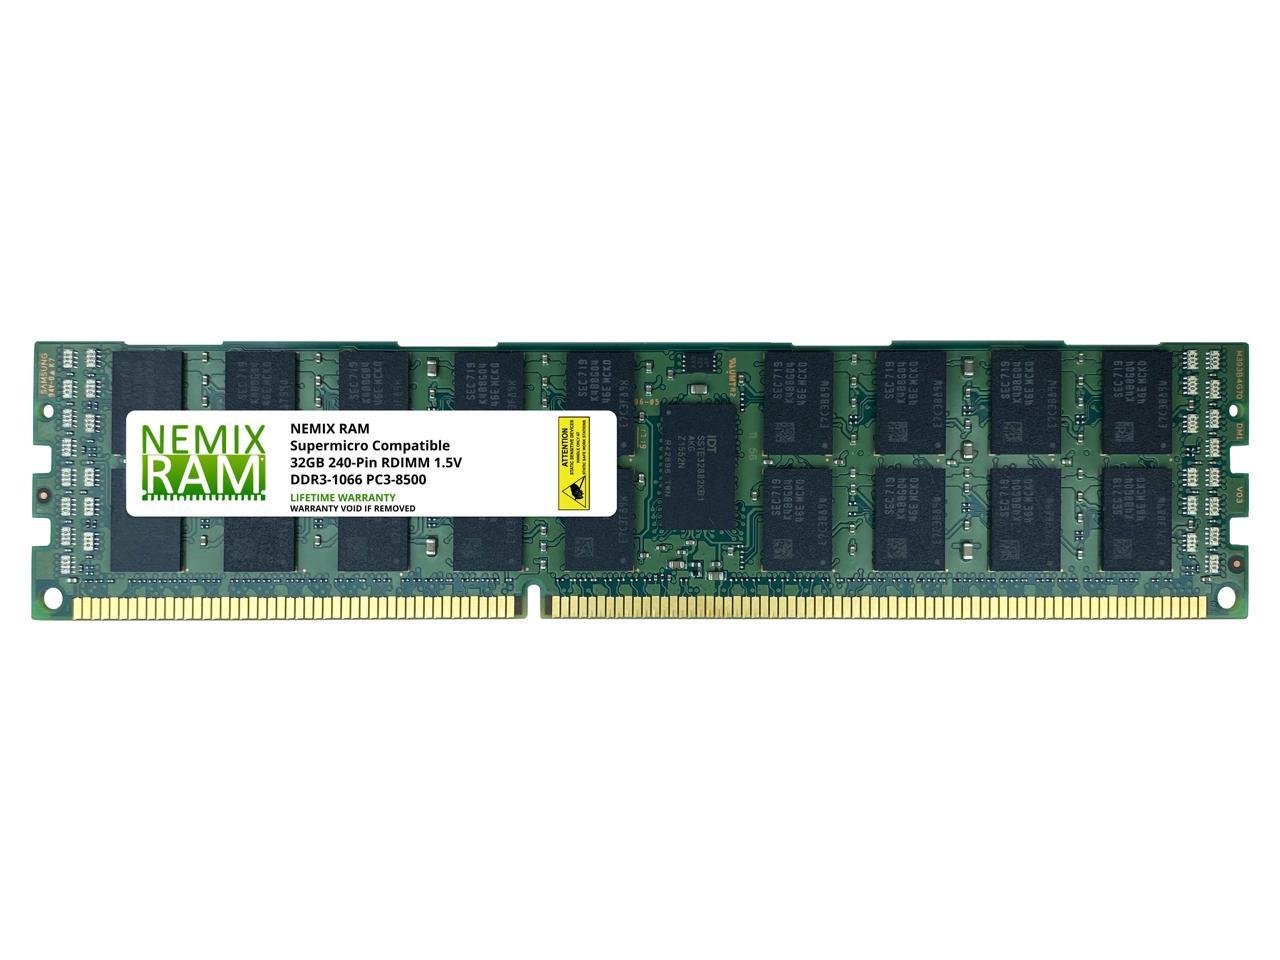 MEM-DR332L-SL03-ER10 32GB Memory Compatible With Supermicro by NEMIX RAM